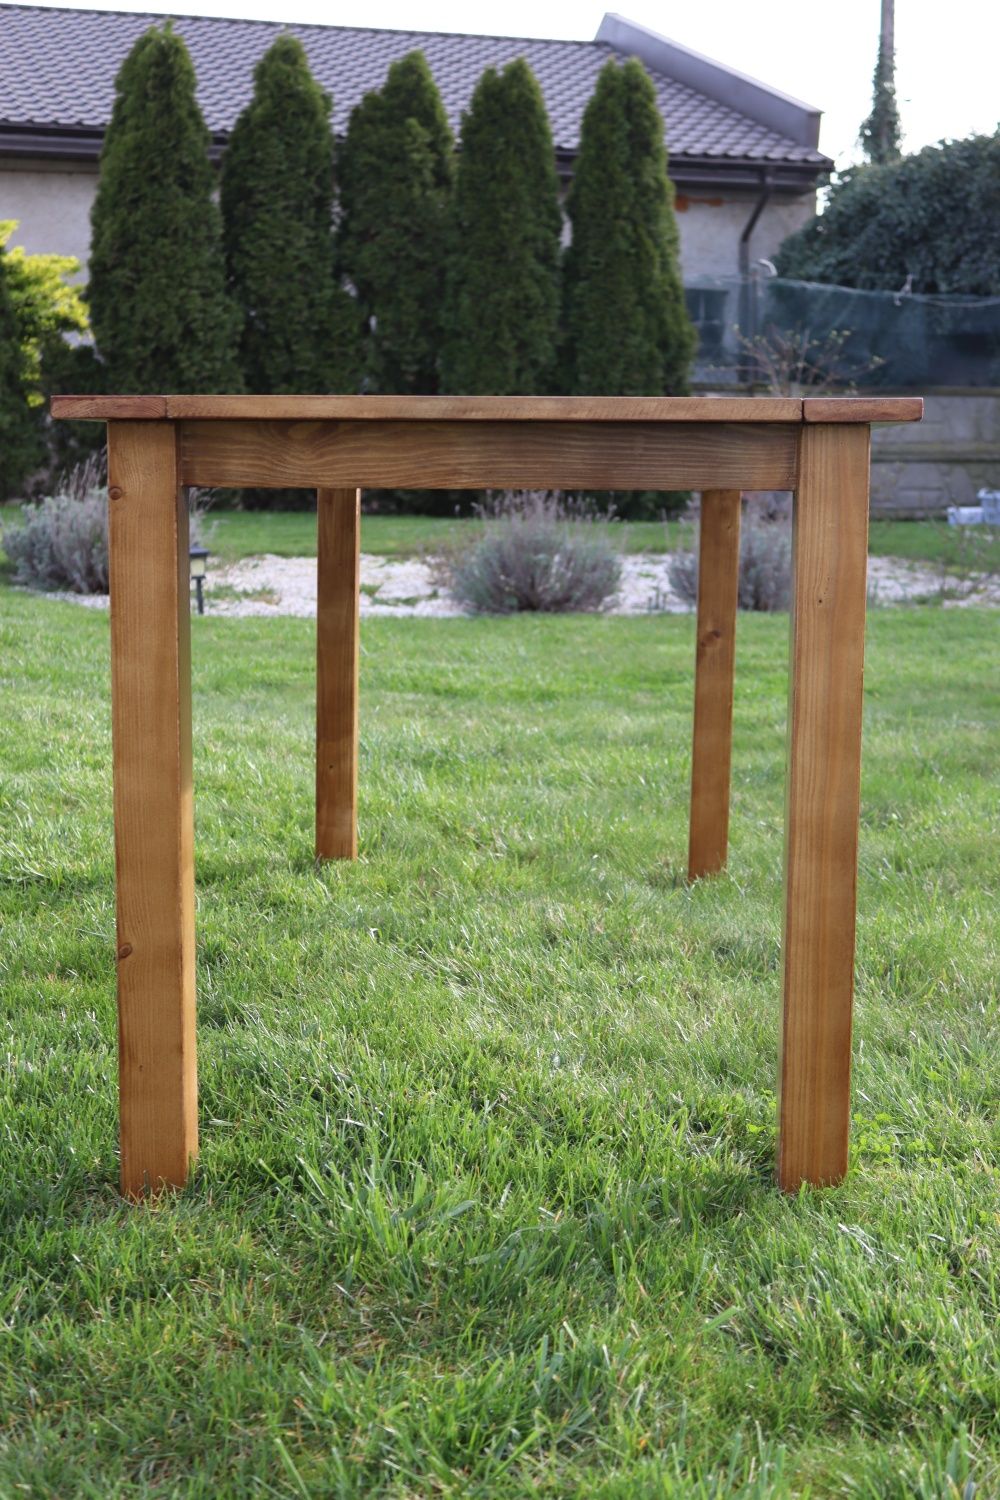 Stół drewniany ogrodowy na taras